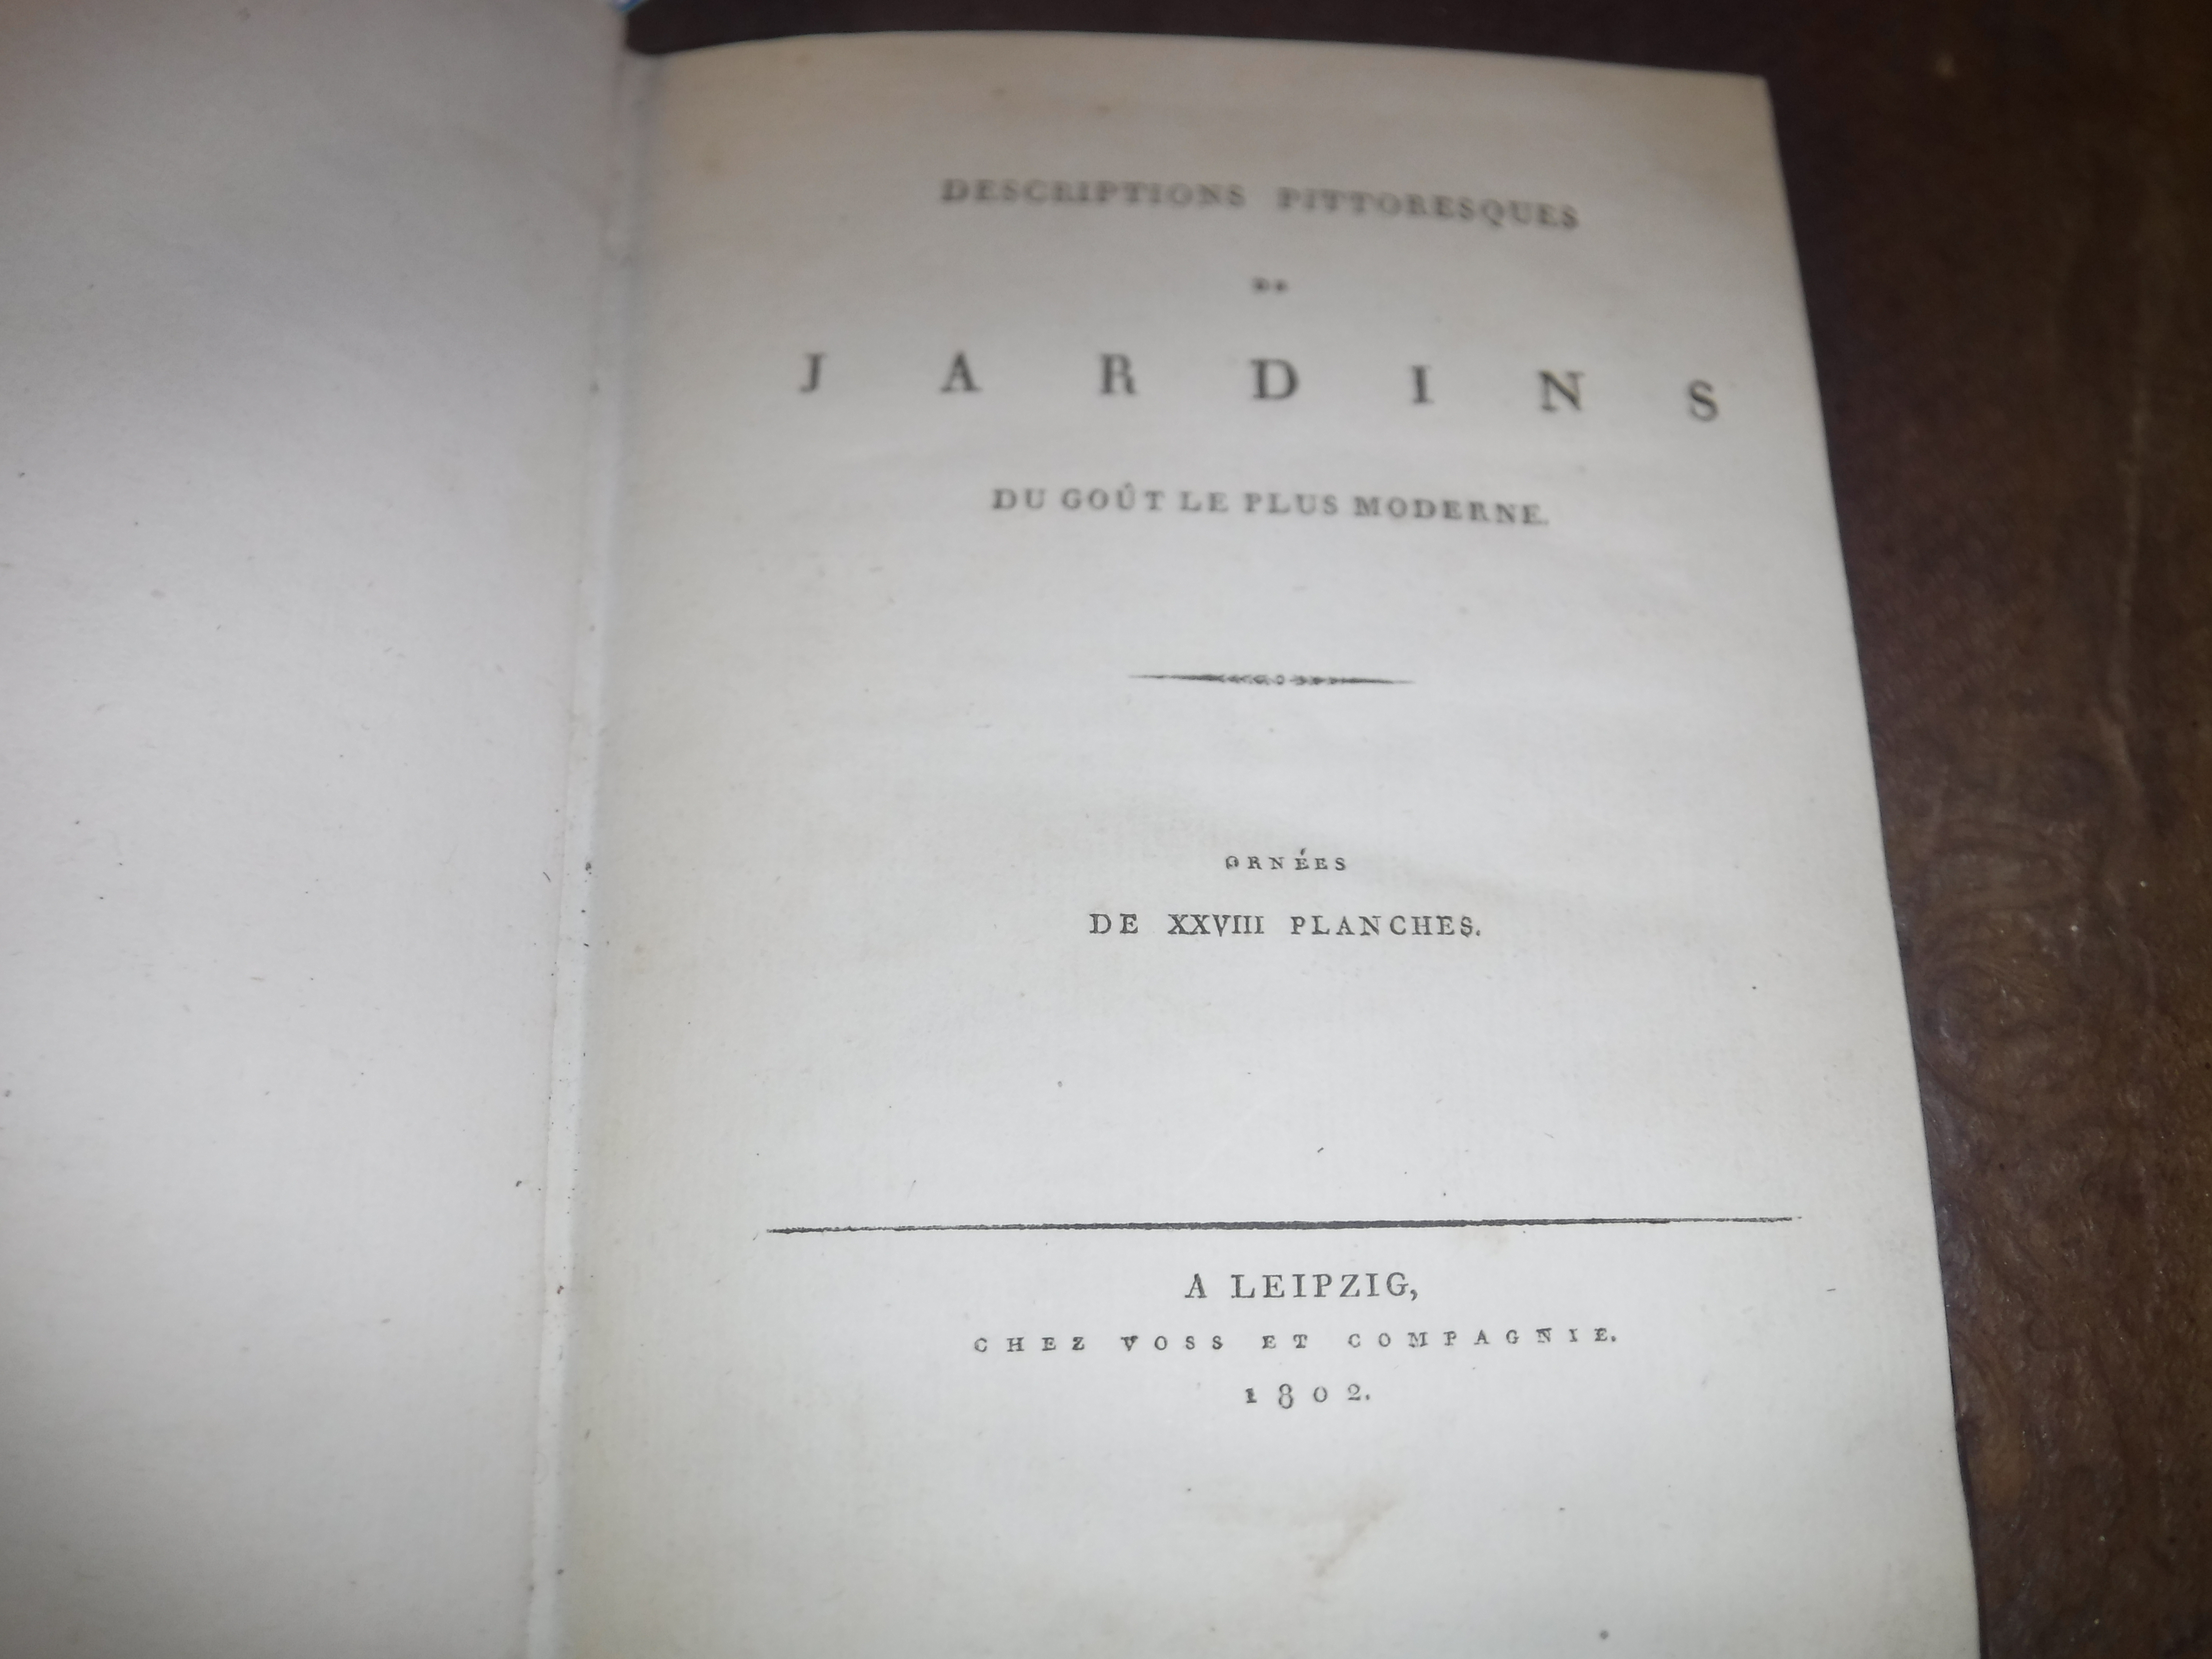 One volume CHRISTIAN LUDWIG STIEGLITZ “Descriptions Pittoresques de Jardins du Gout Plus Moderne - Image 2 of 2